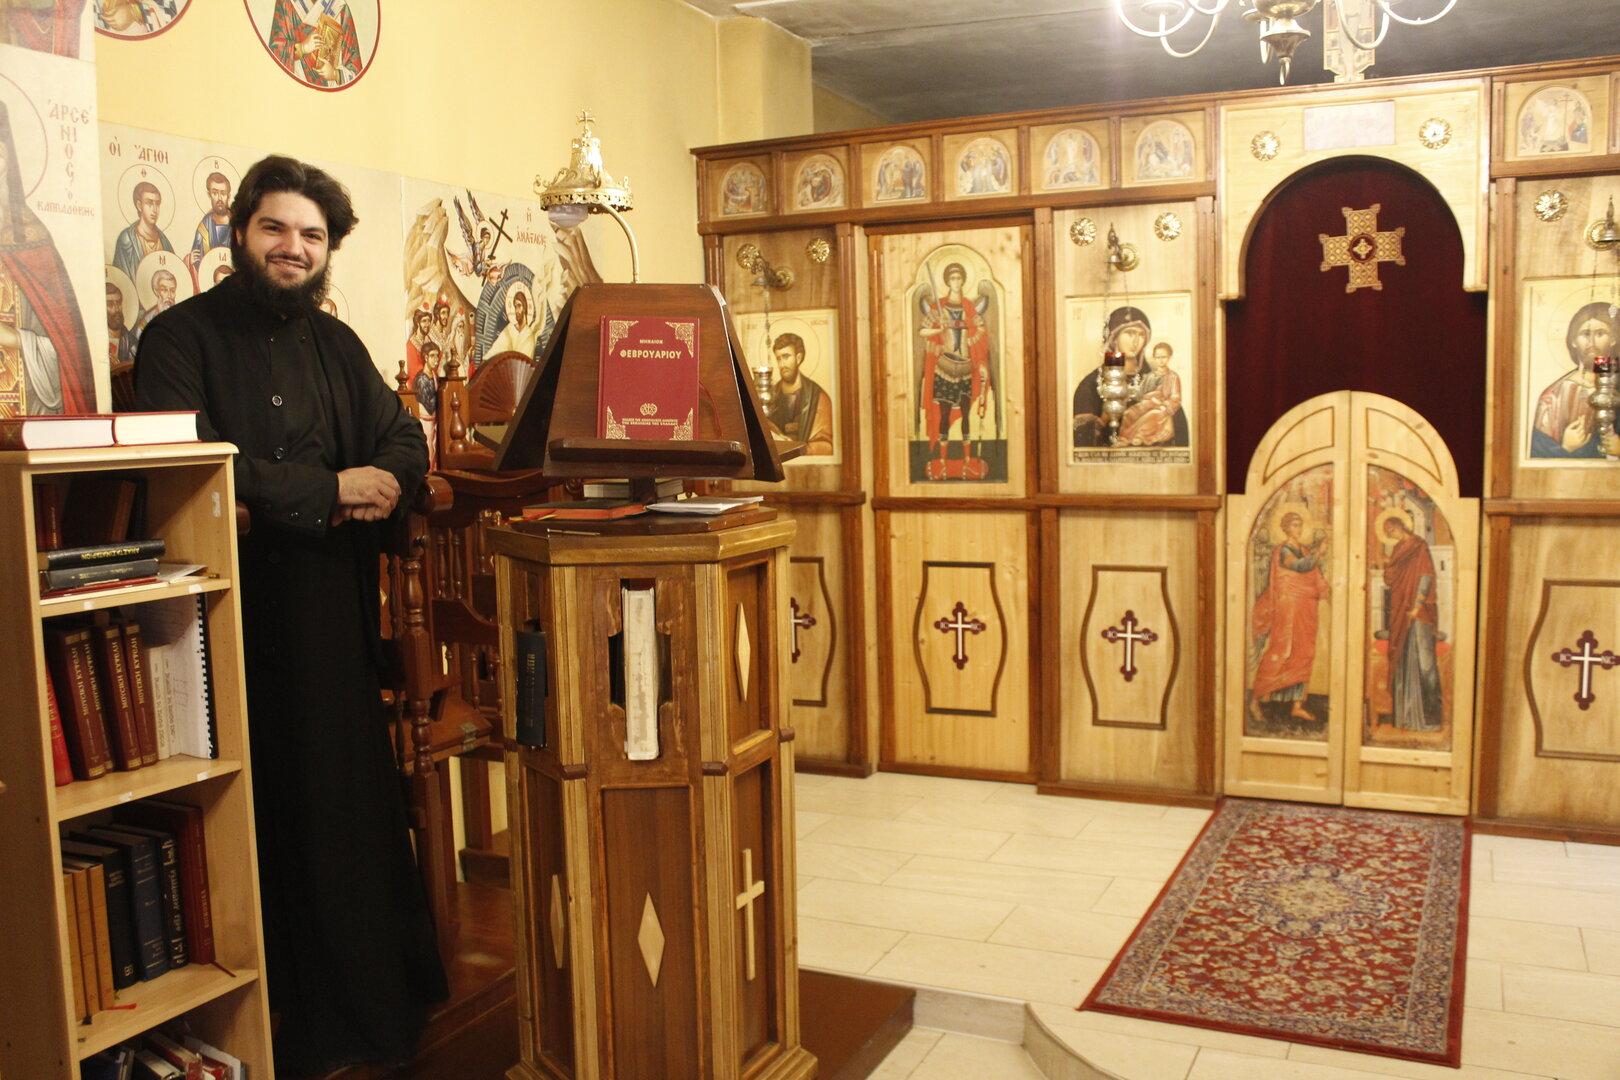 österreichs erstes griechisch-orthodoxes kloster: baustart verzögert sich weiter